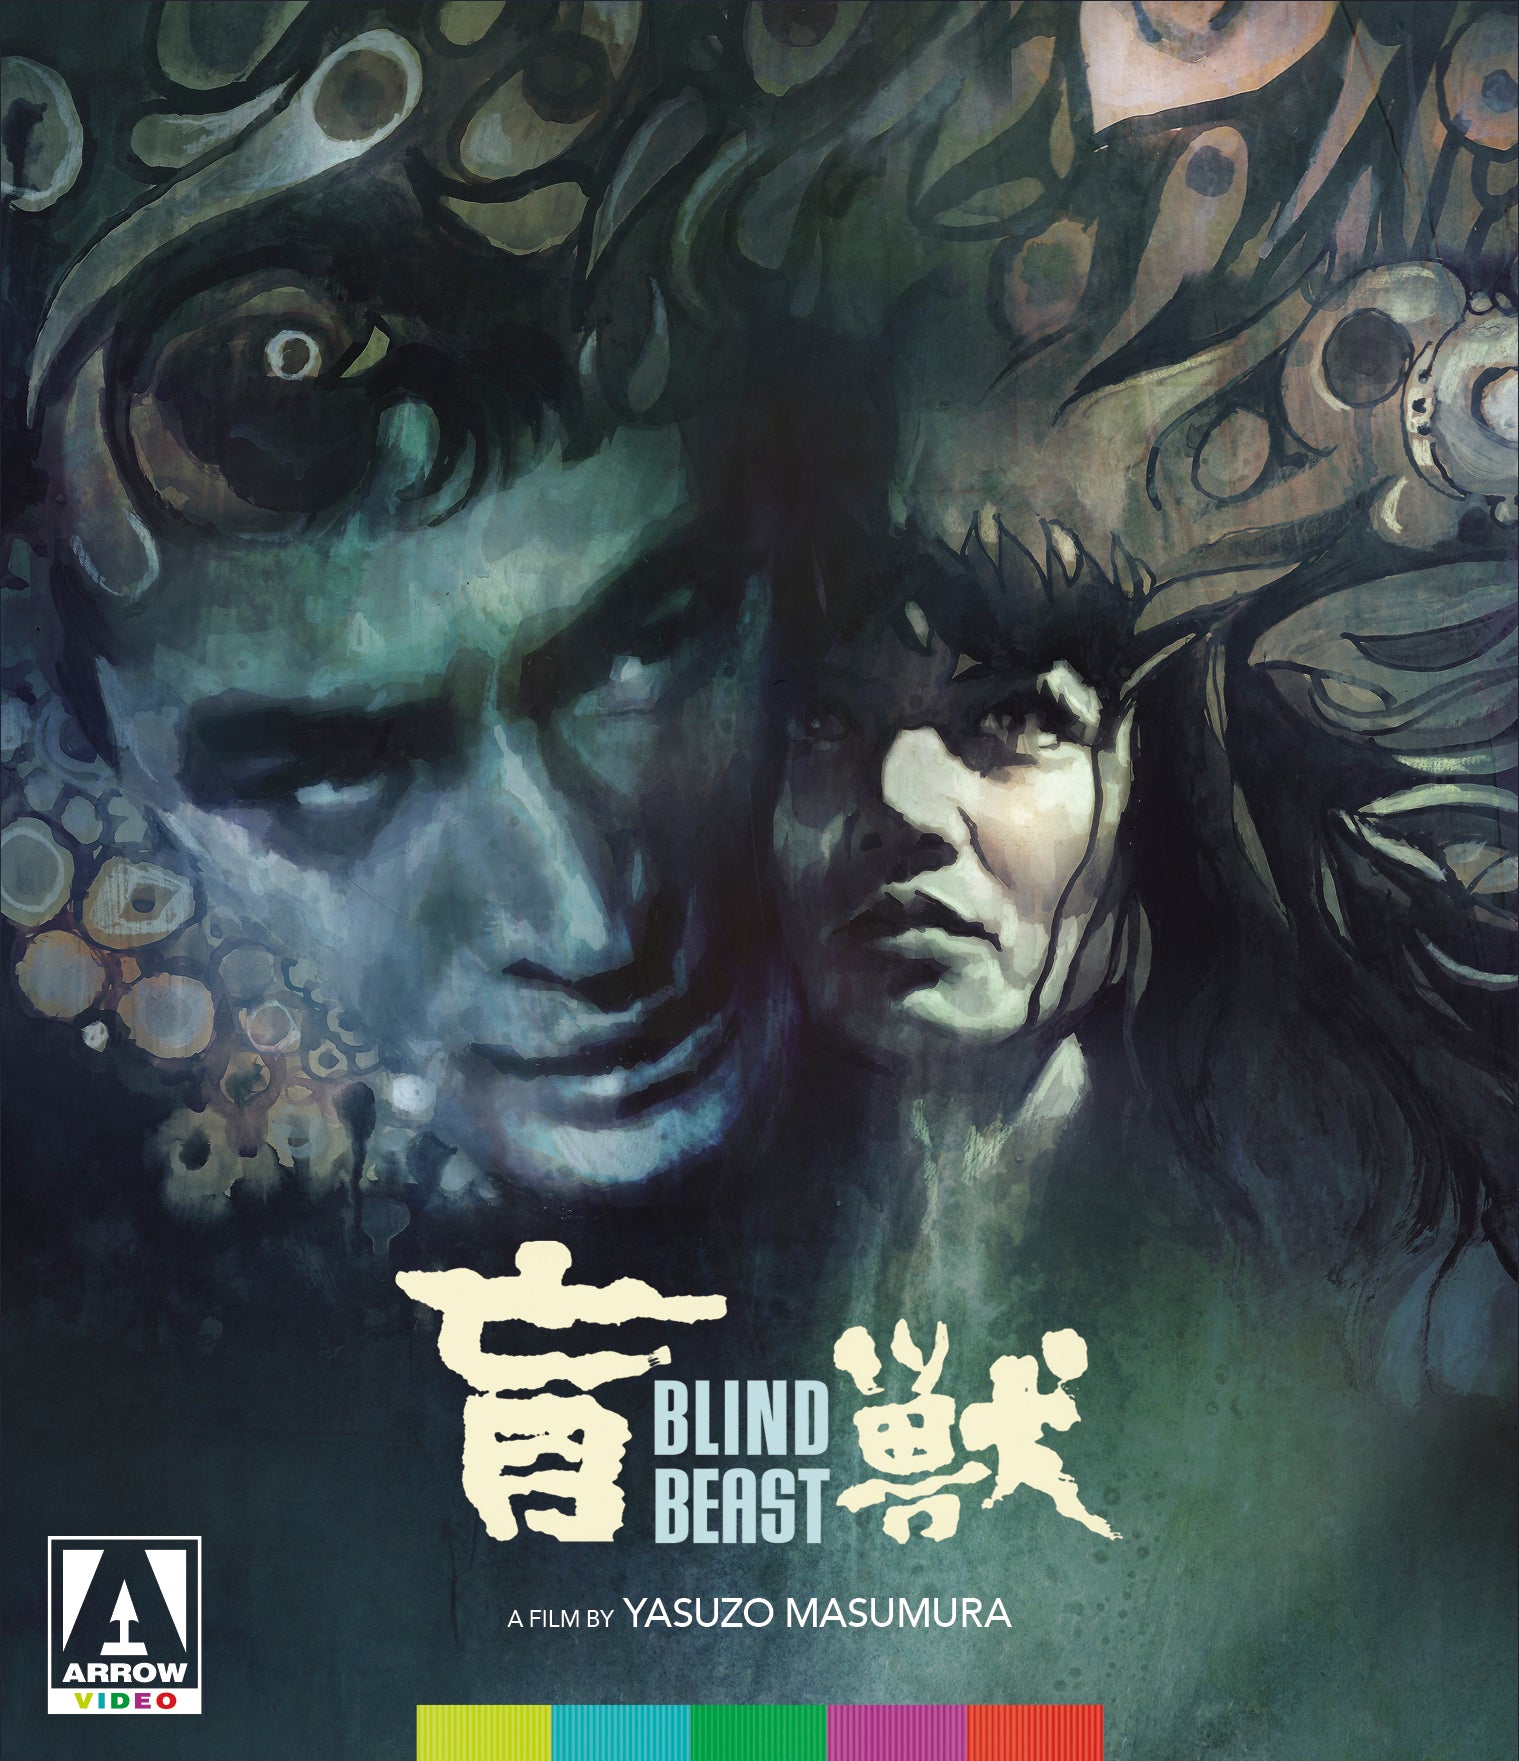 Blind Beast [Blu-ray] cover art